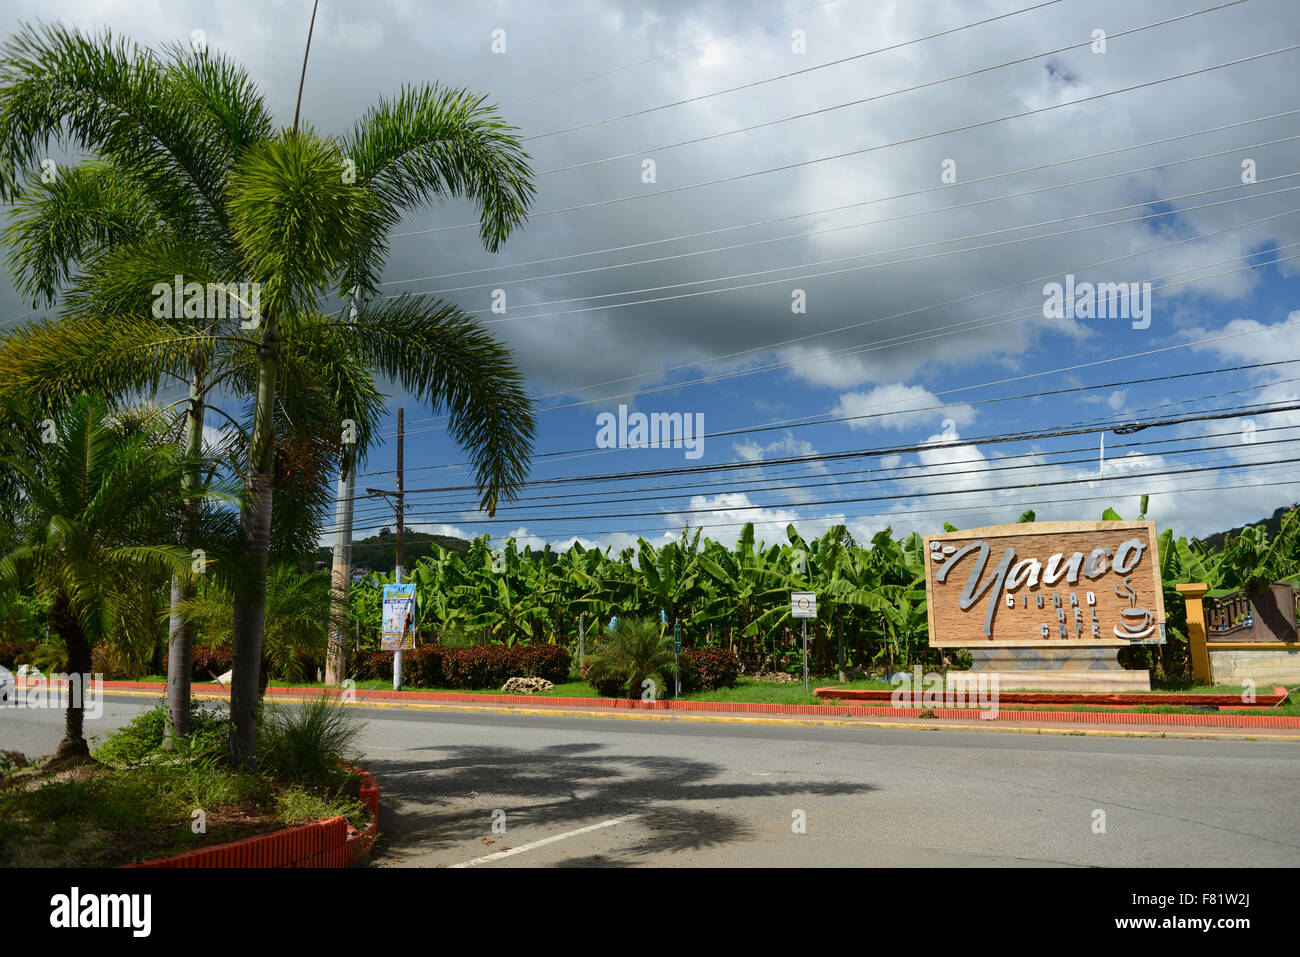 Melden Sie sich am Eingang der Stadt Yauco, Puerto Rico. Territorium der USA. Karibik-Insel. (Bananen-Plantage im Hintergrund) Stockfoto